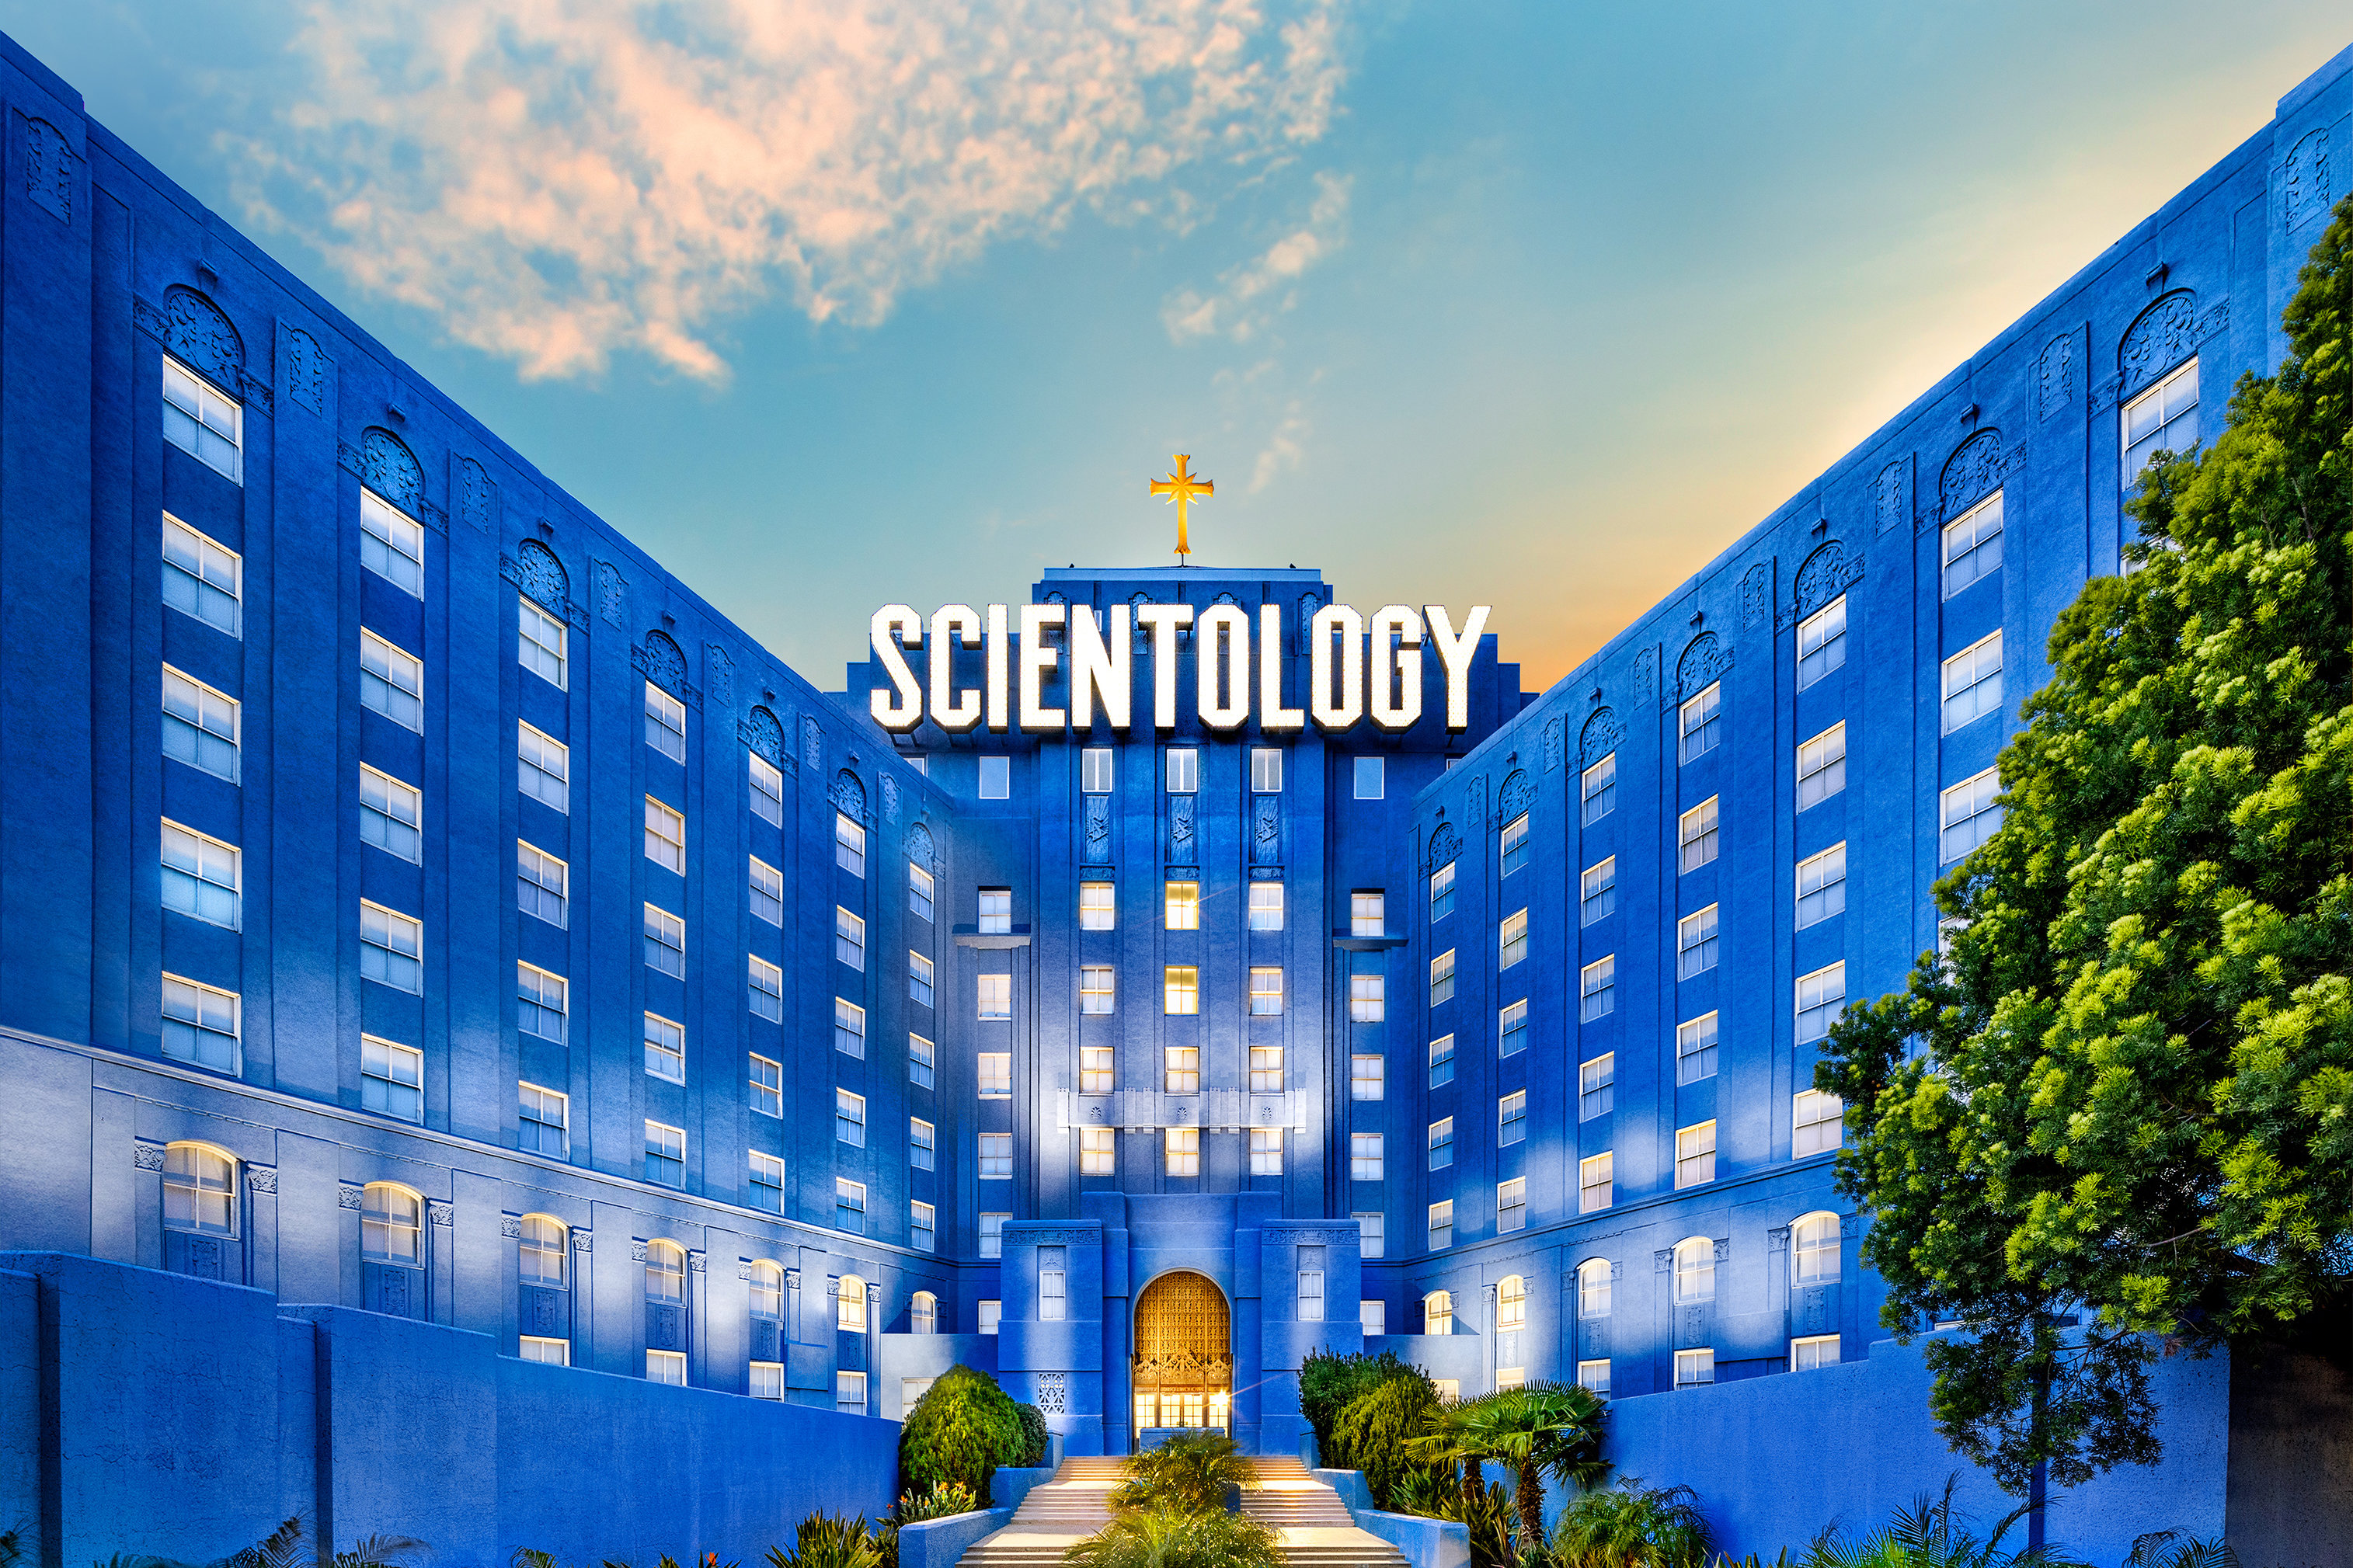 Was ist Scientology?